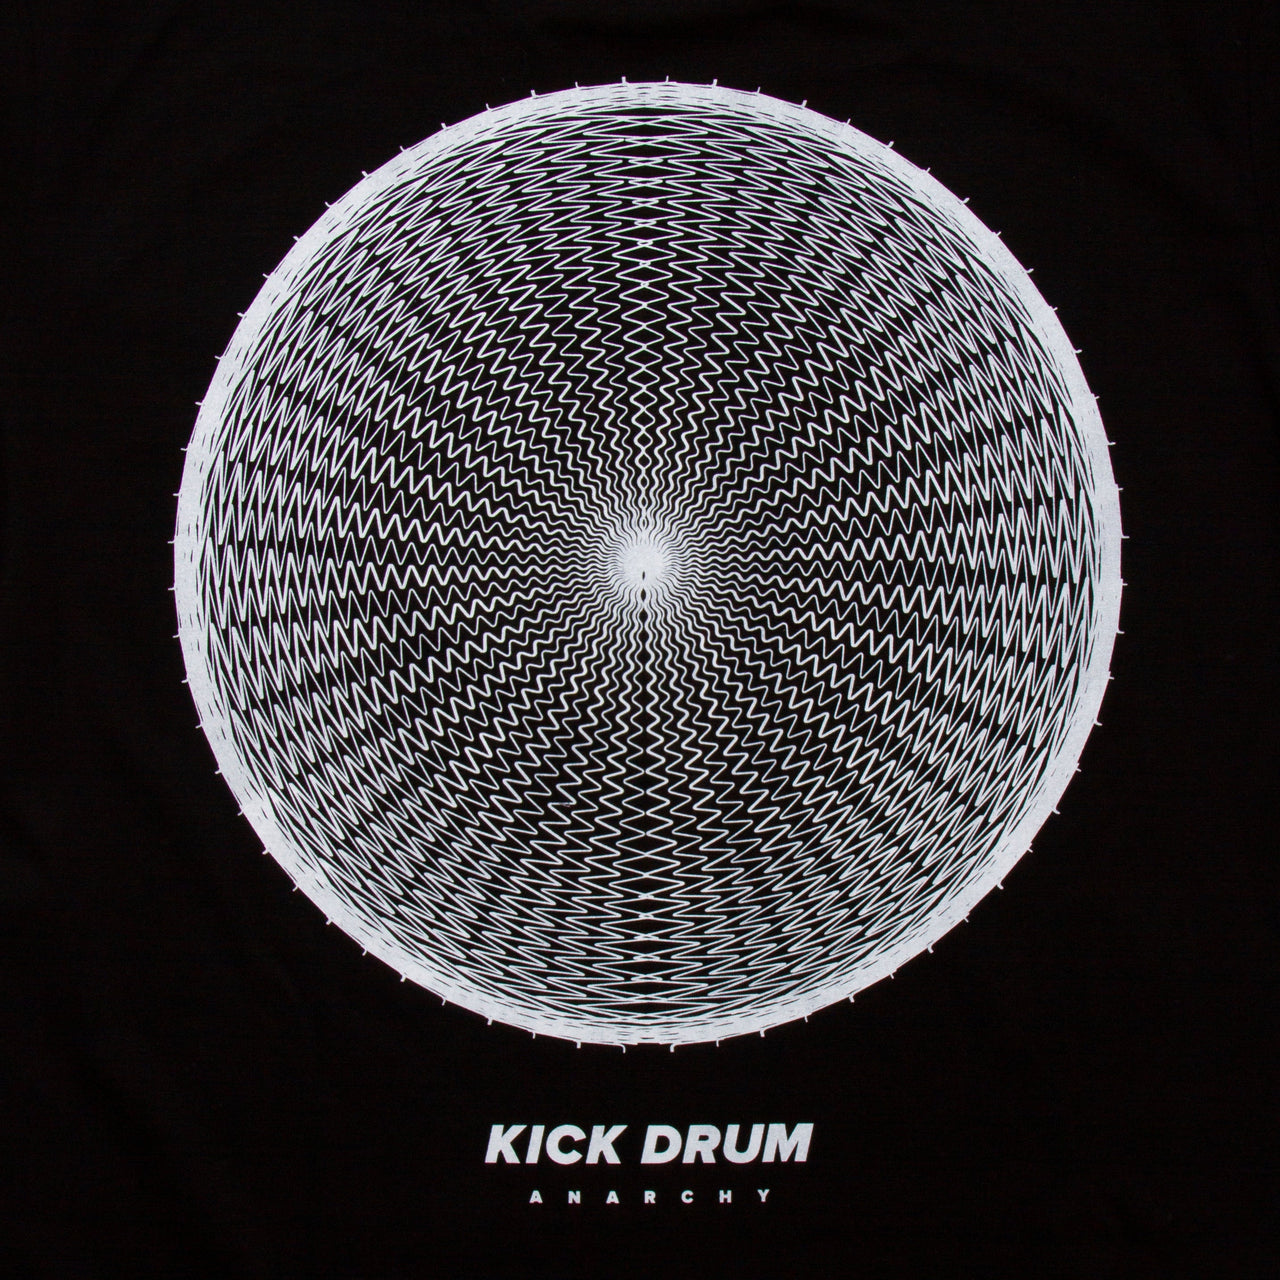 Kick Drum Back Print - Tshirt - Black